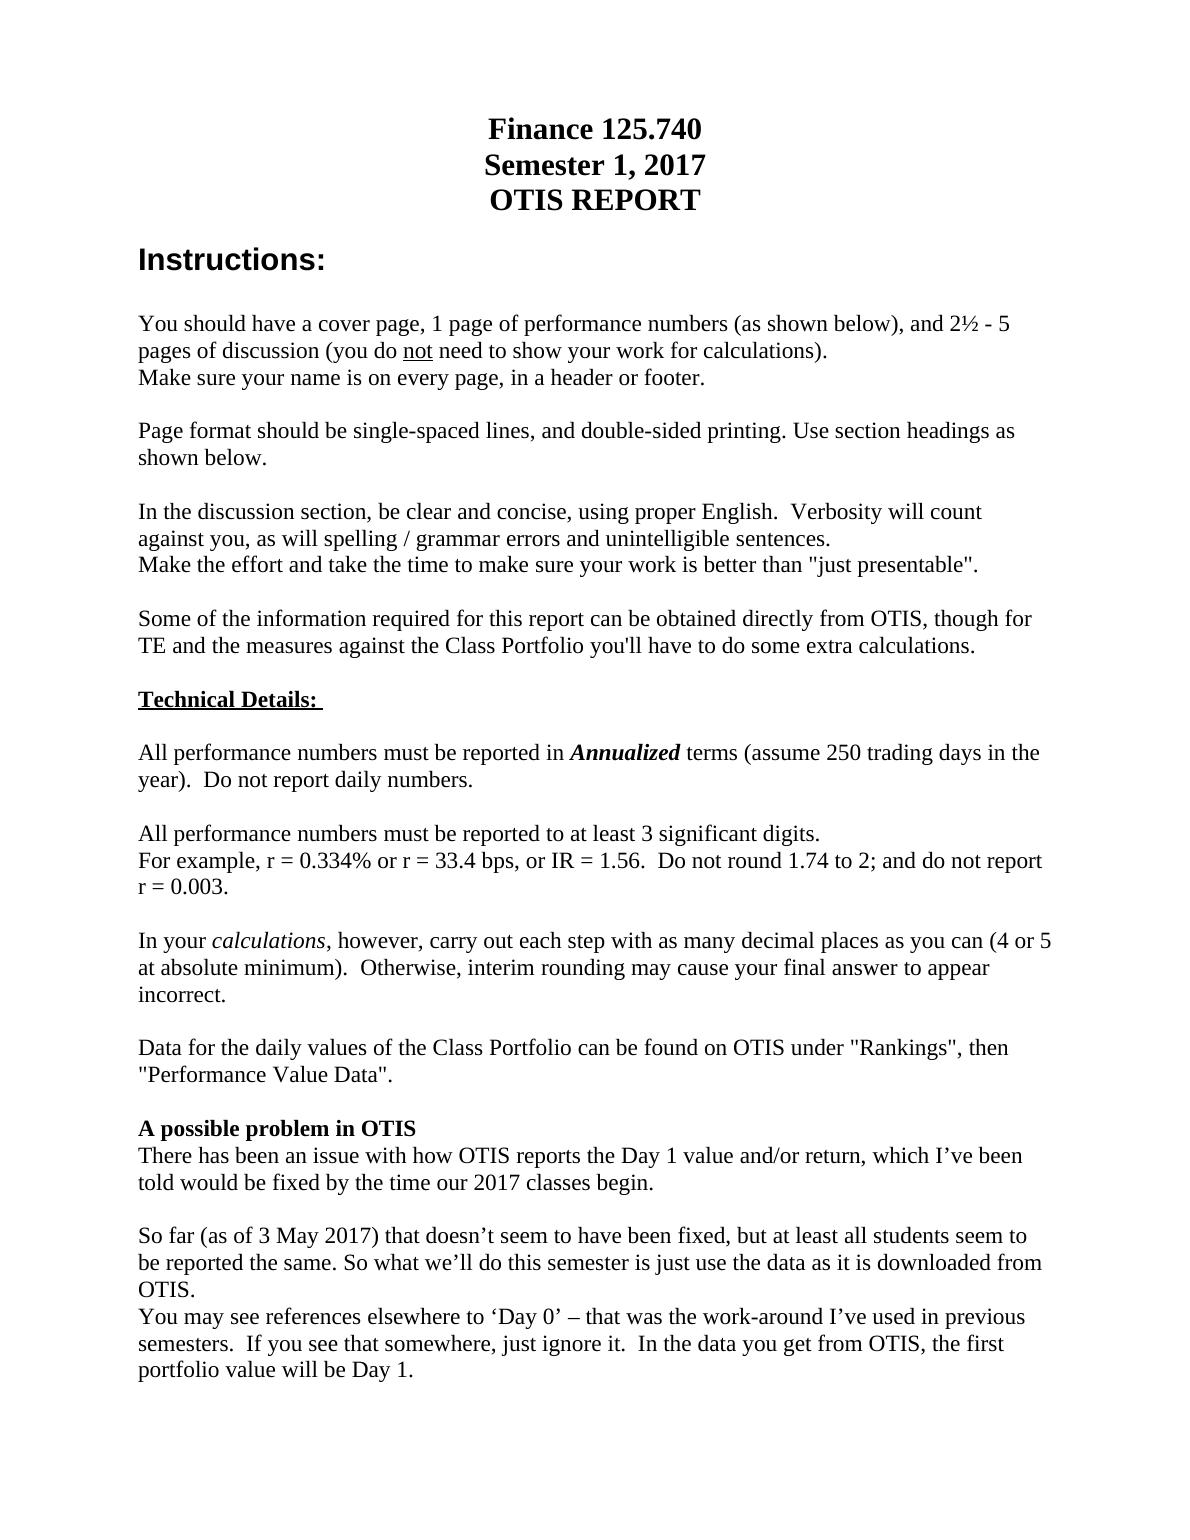 Finance: OTIS Report_1